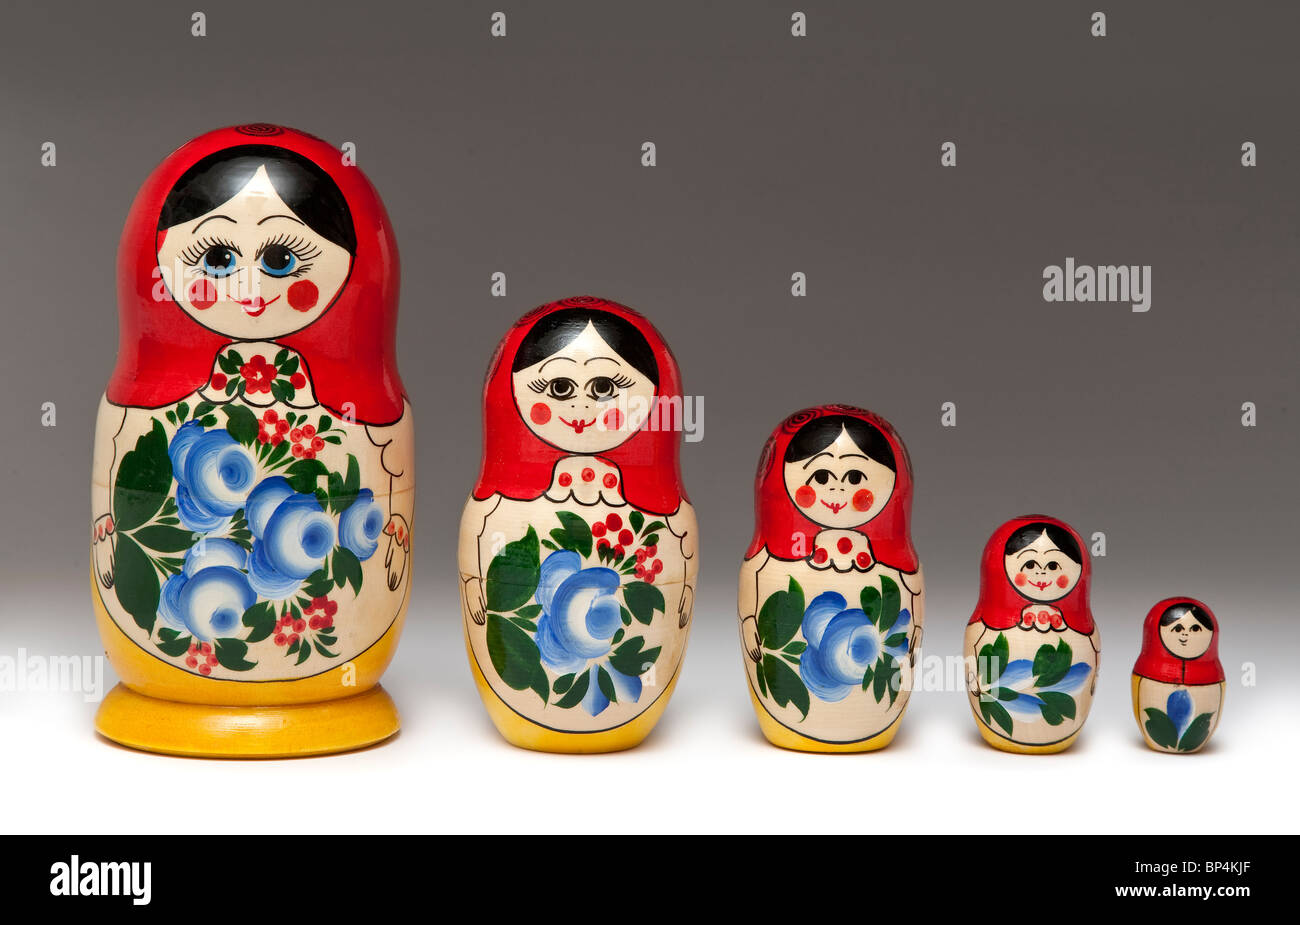 Poupées russes d'emboîtement, Babushka doll, diplômé background Banque D'Images